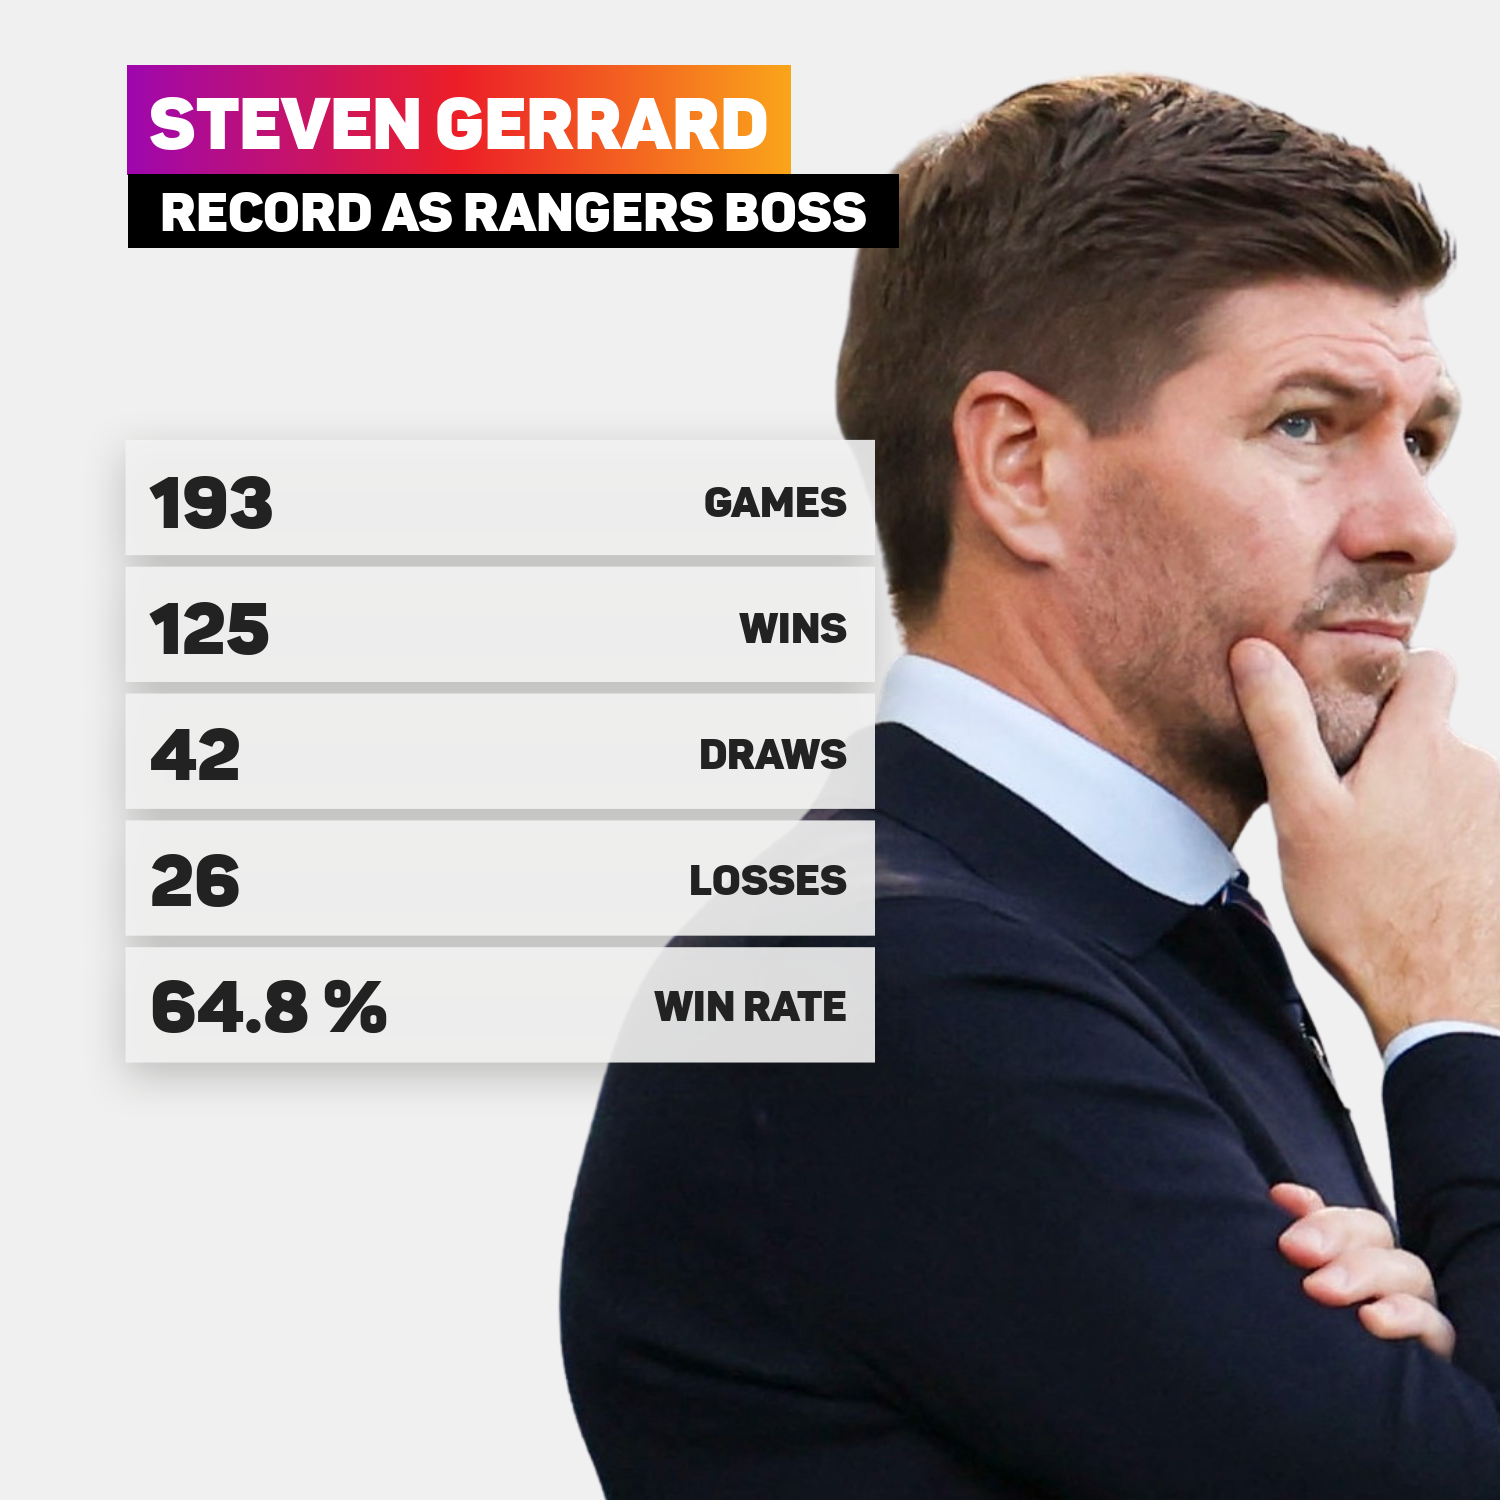 Steven Gerrard's record as Rangers boss